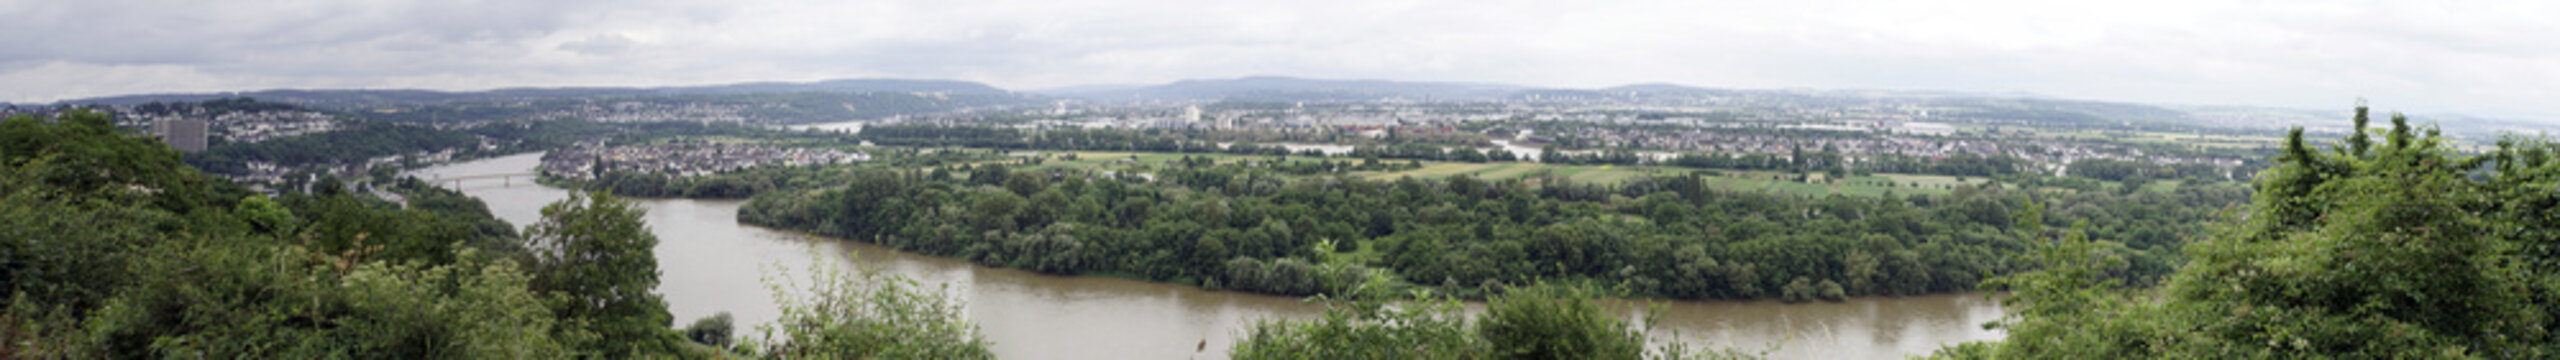 Blick auf das Rheintal und die Rheininsel Niederwerth